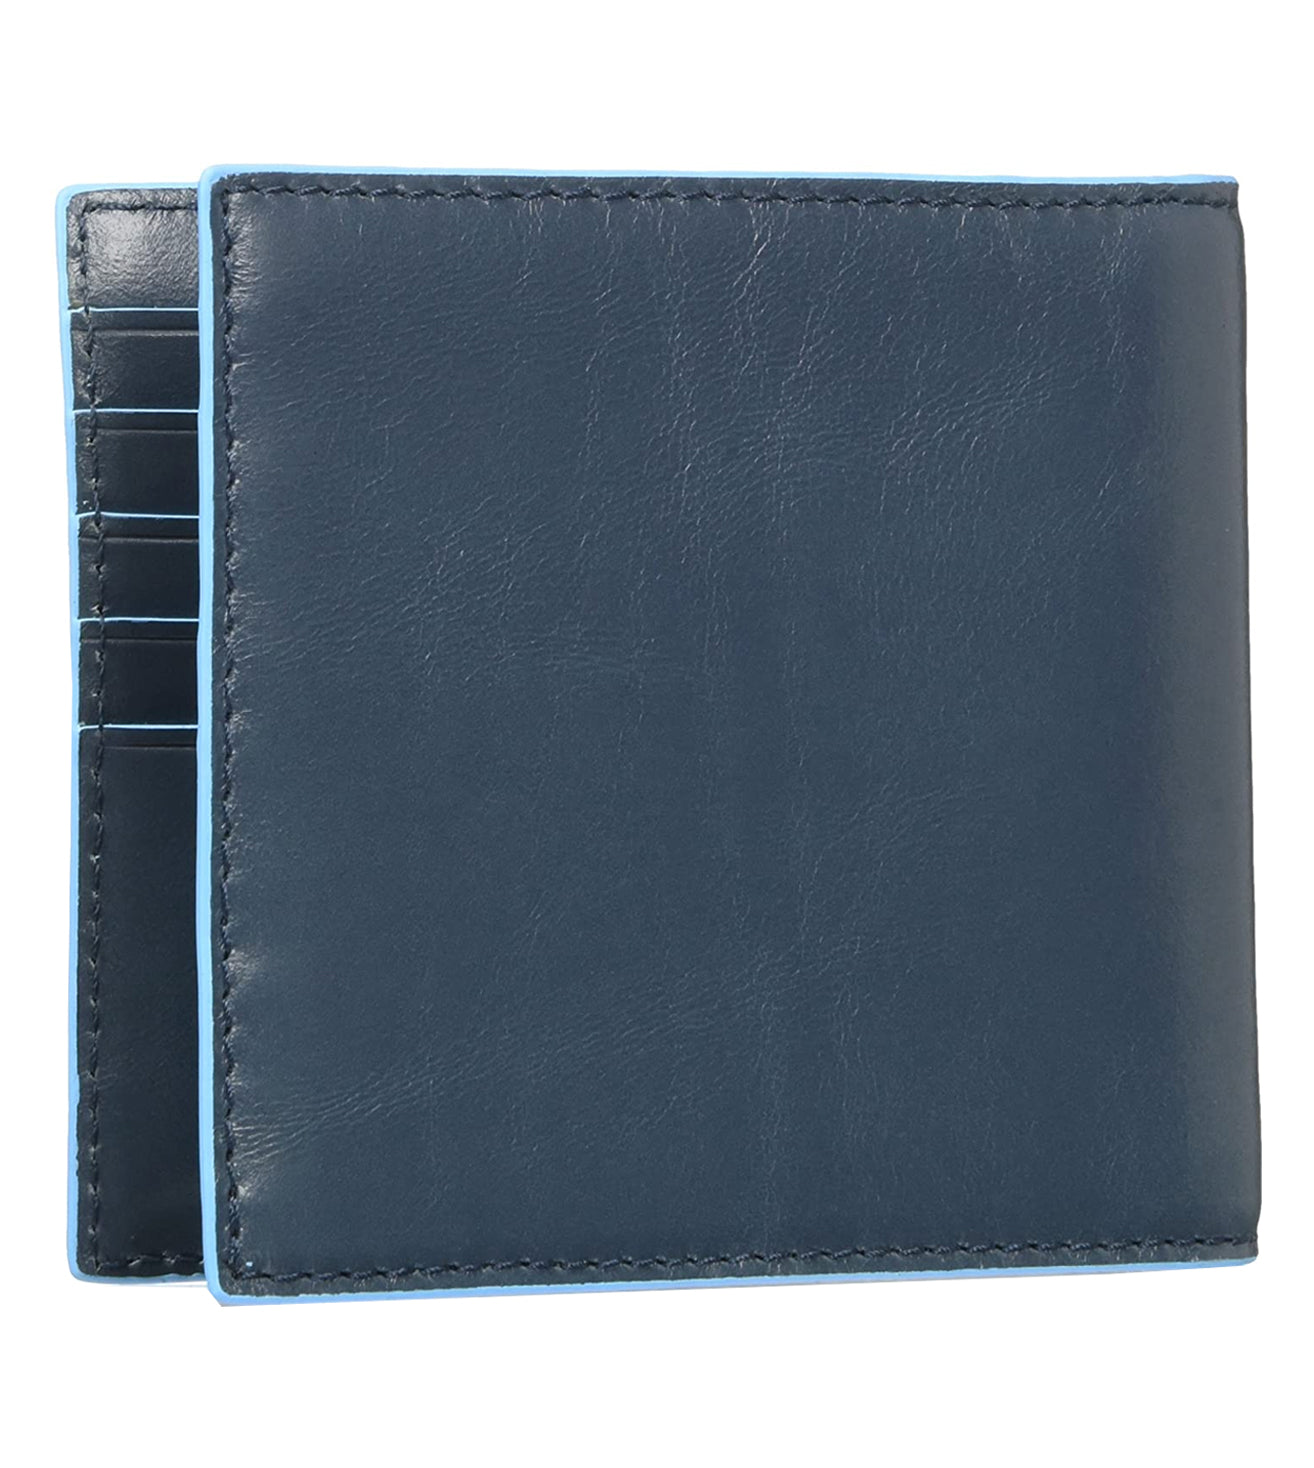 Piquadro Blue Square Men's R.A.F. Blue Wallet